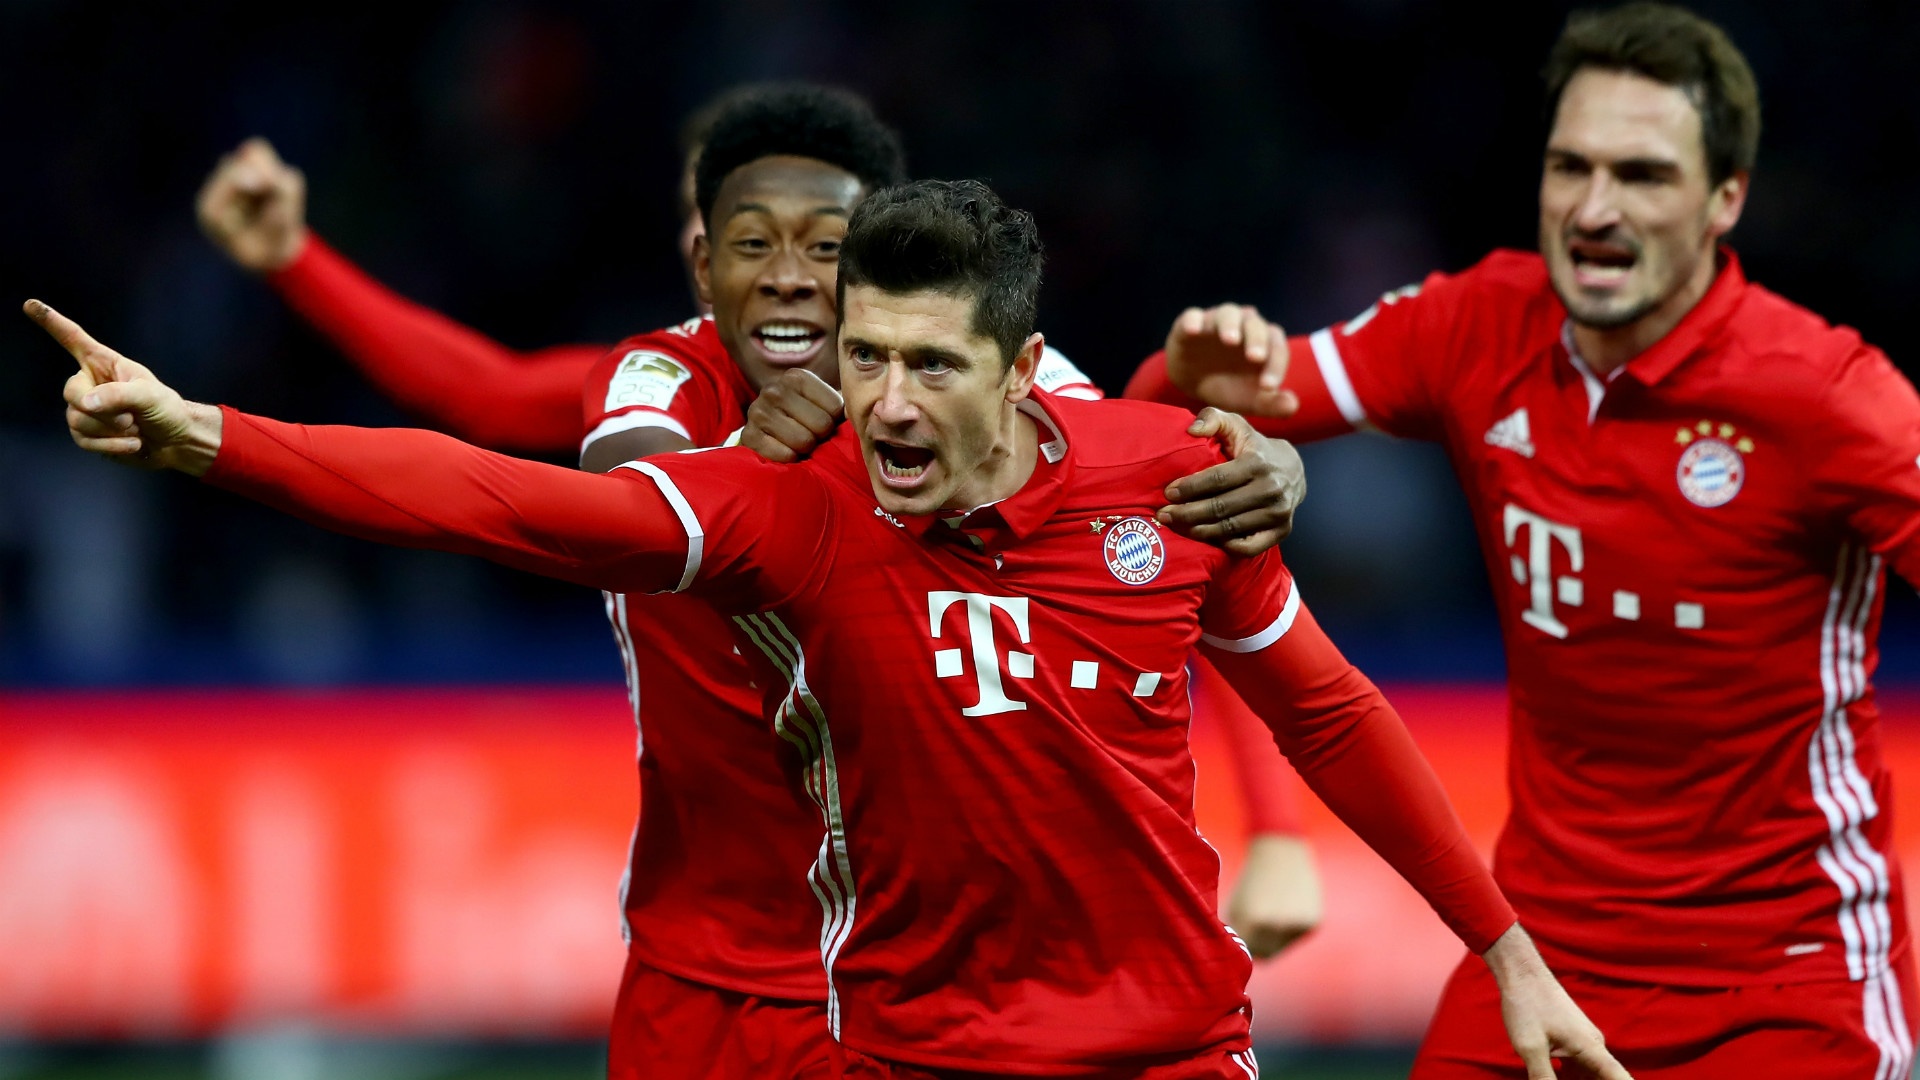 Campeonato Alemão: no último lance, Bayern evita queda de jejum